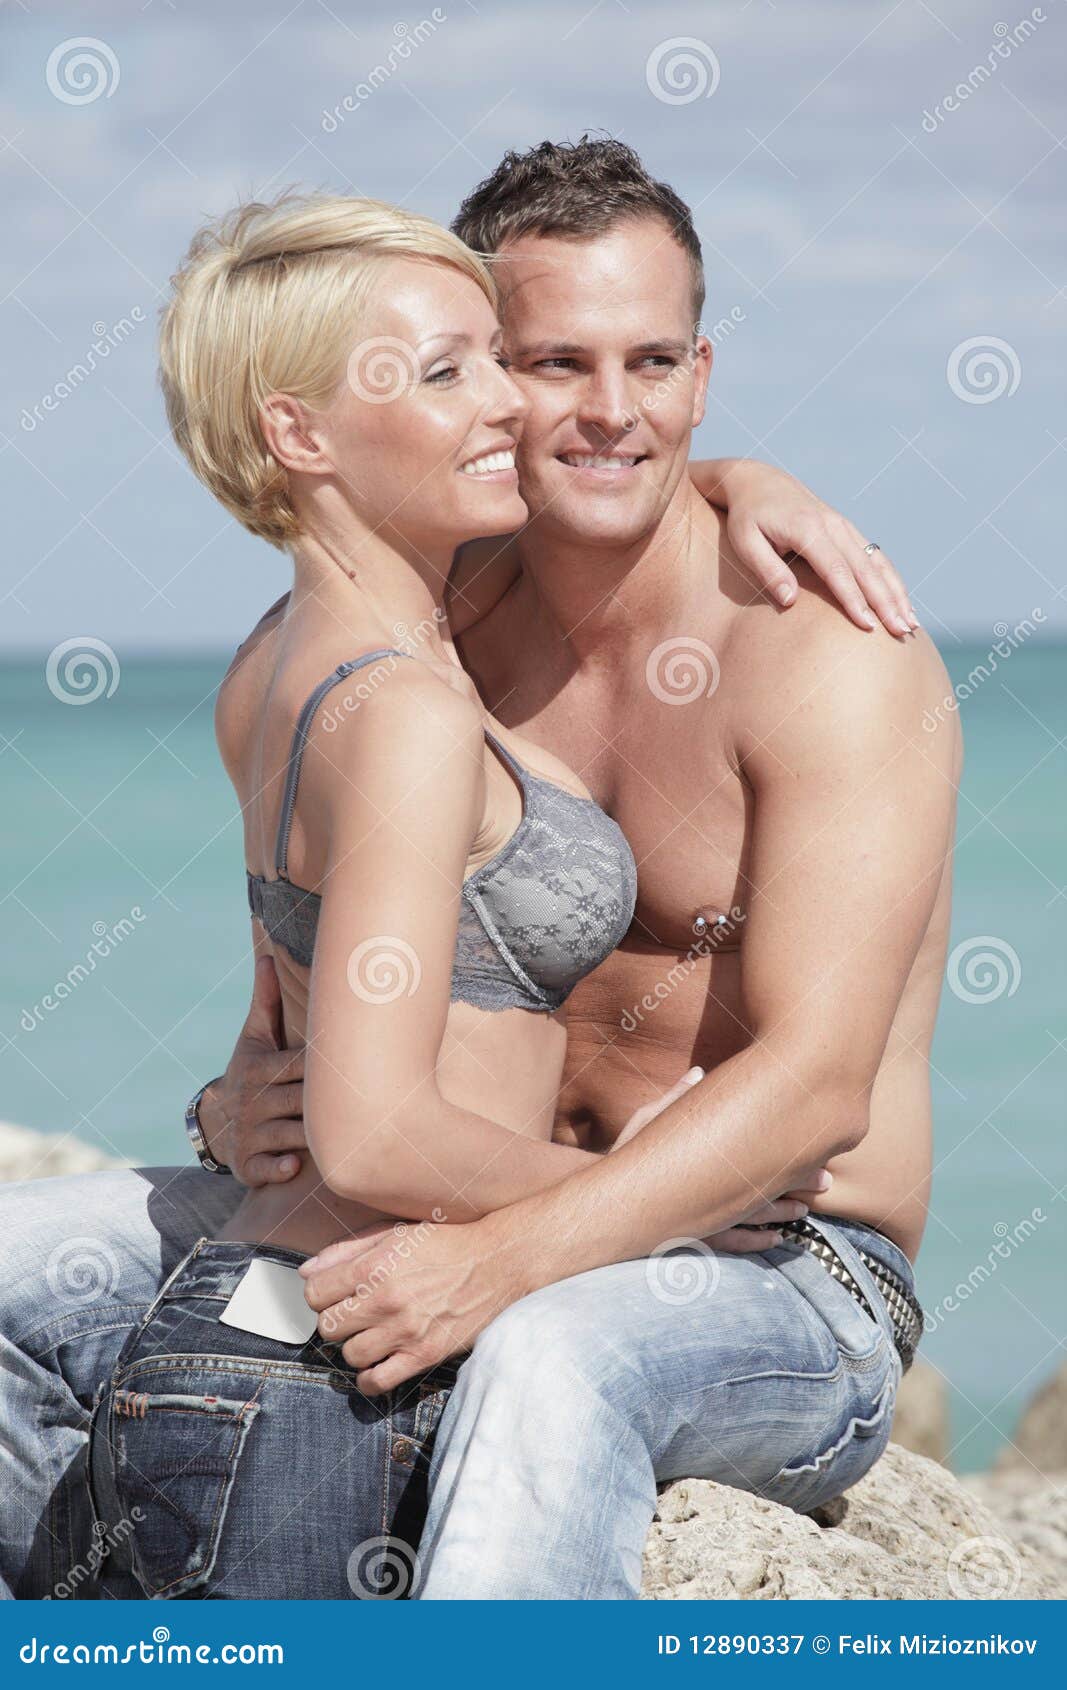 Junges Paar Lässt Es Auf Dem Strand Ordentlich Krachen